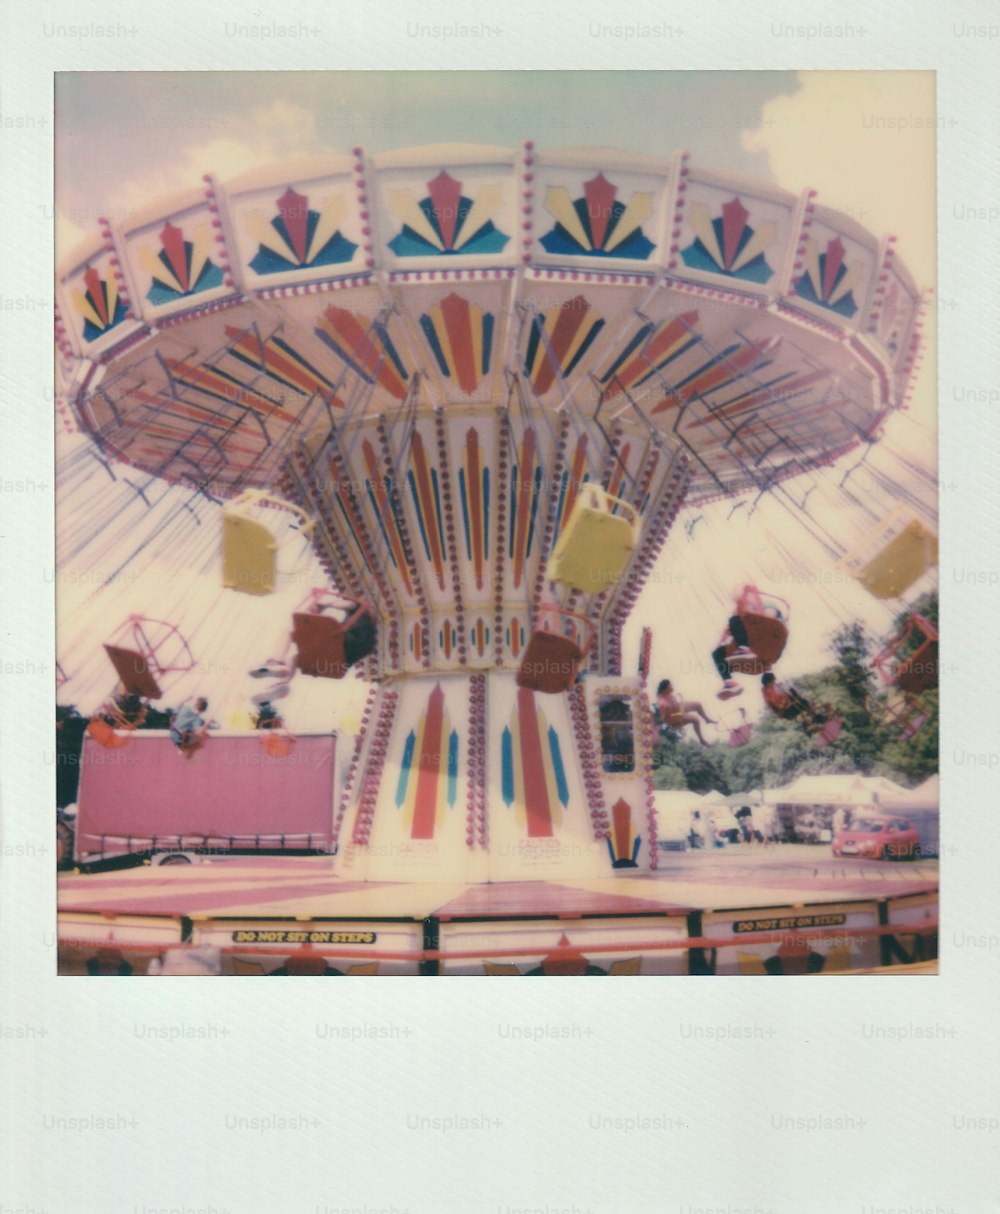 Une vieille photo d’un manège de carnaval